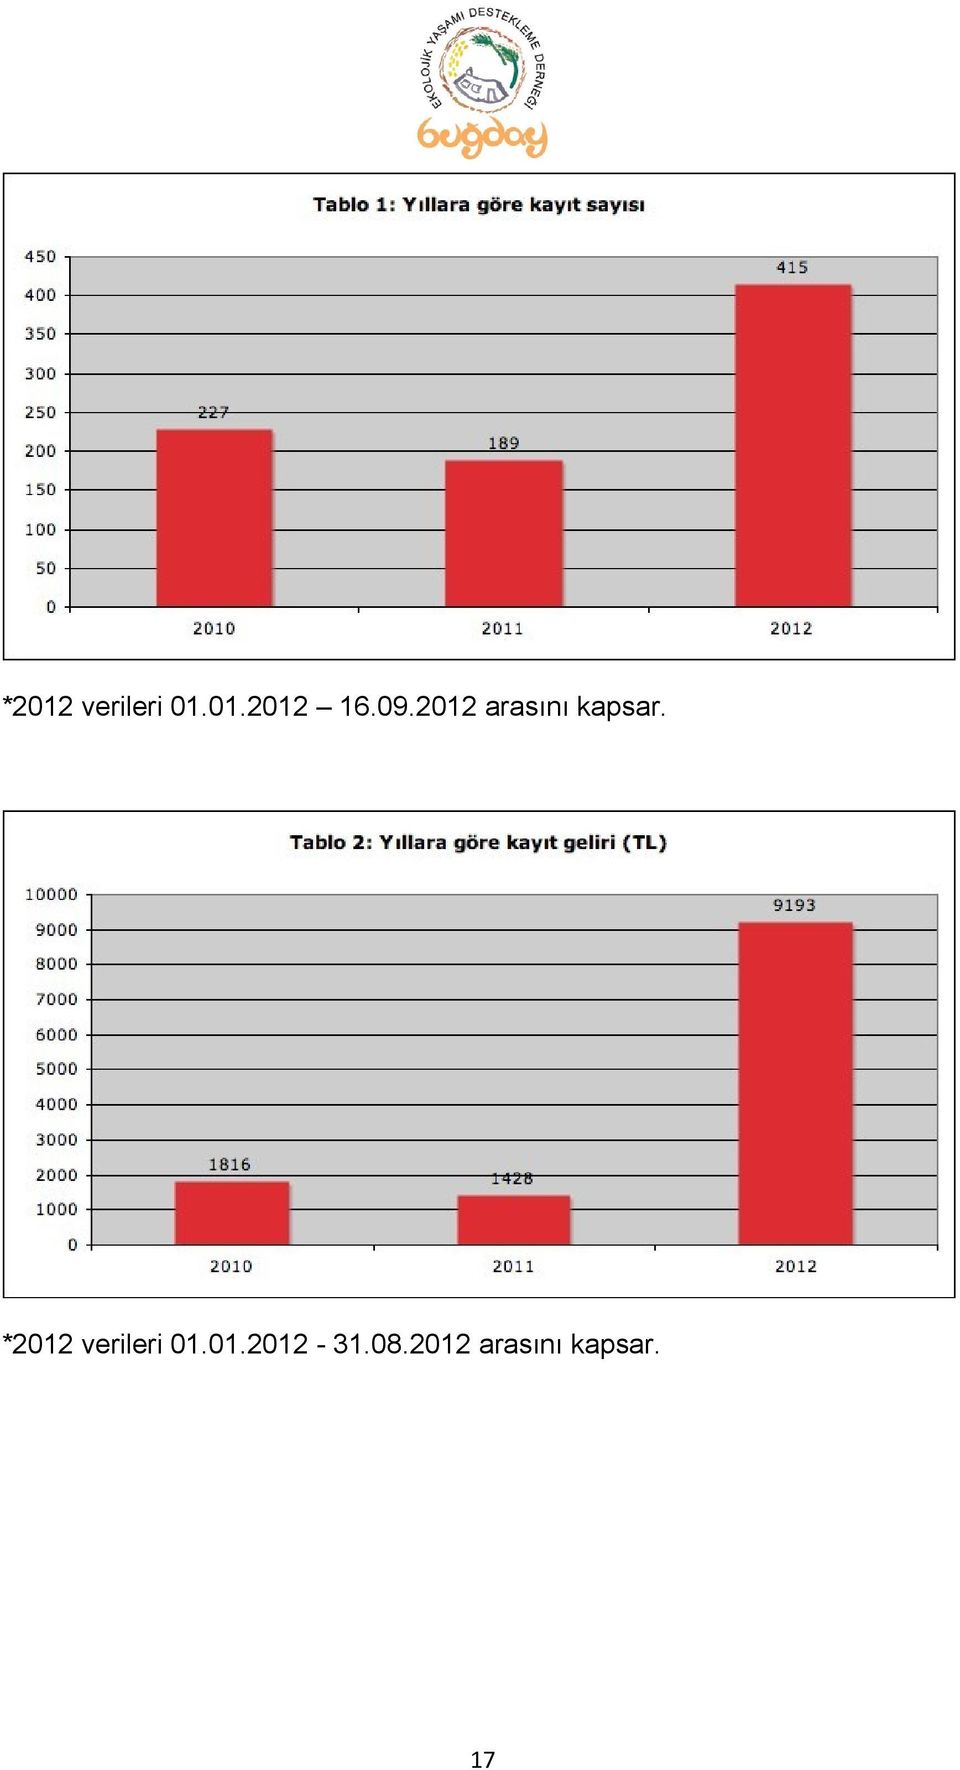 *2012 verileri 01.01.2012-31.